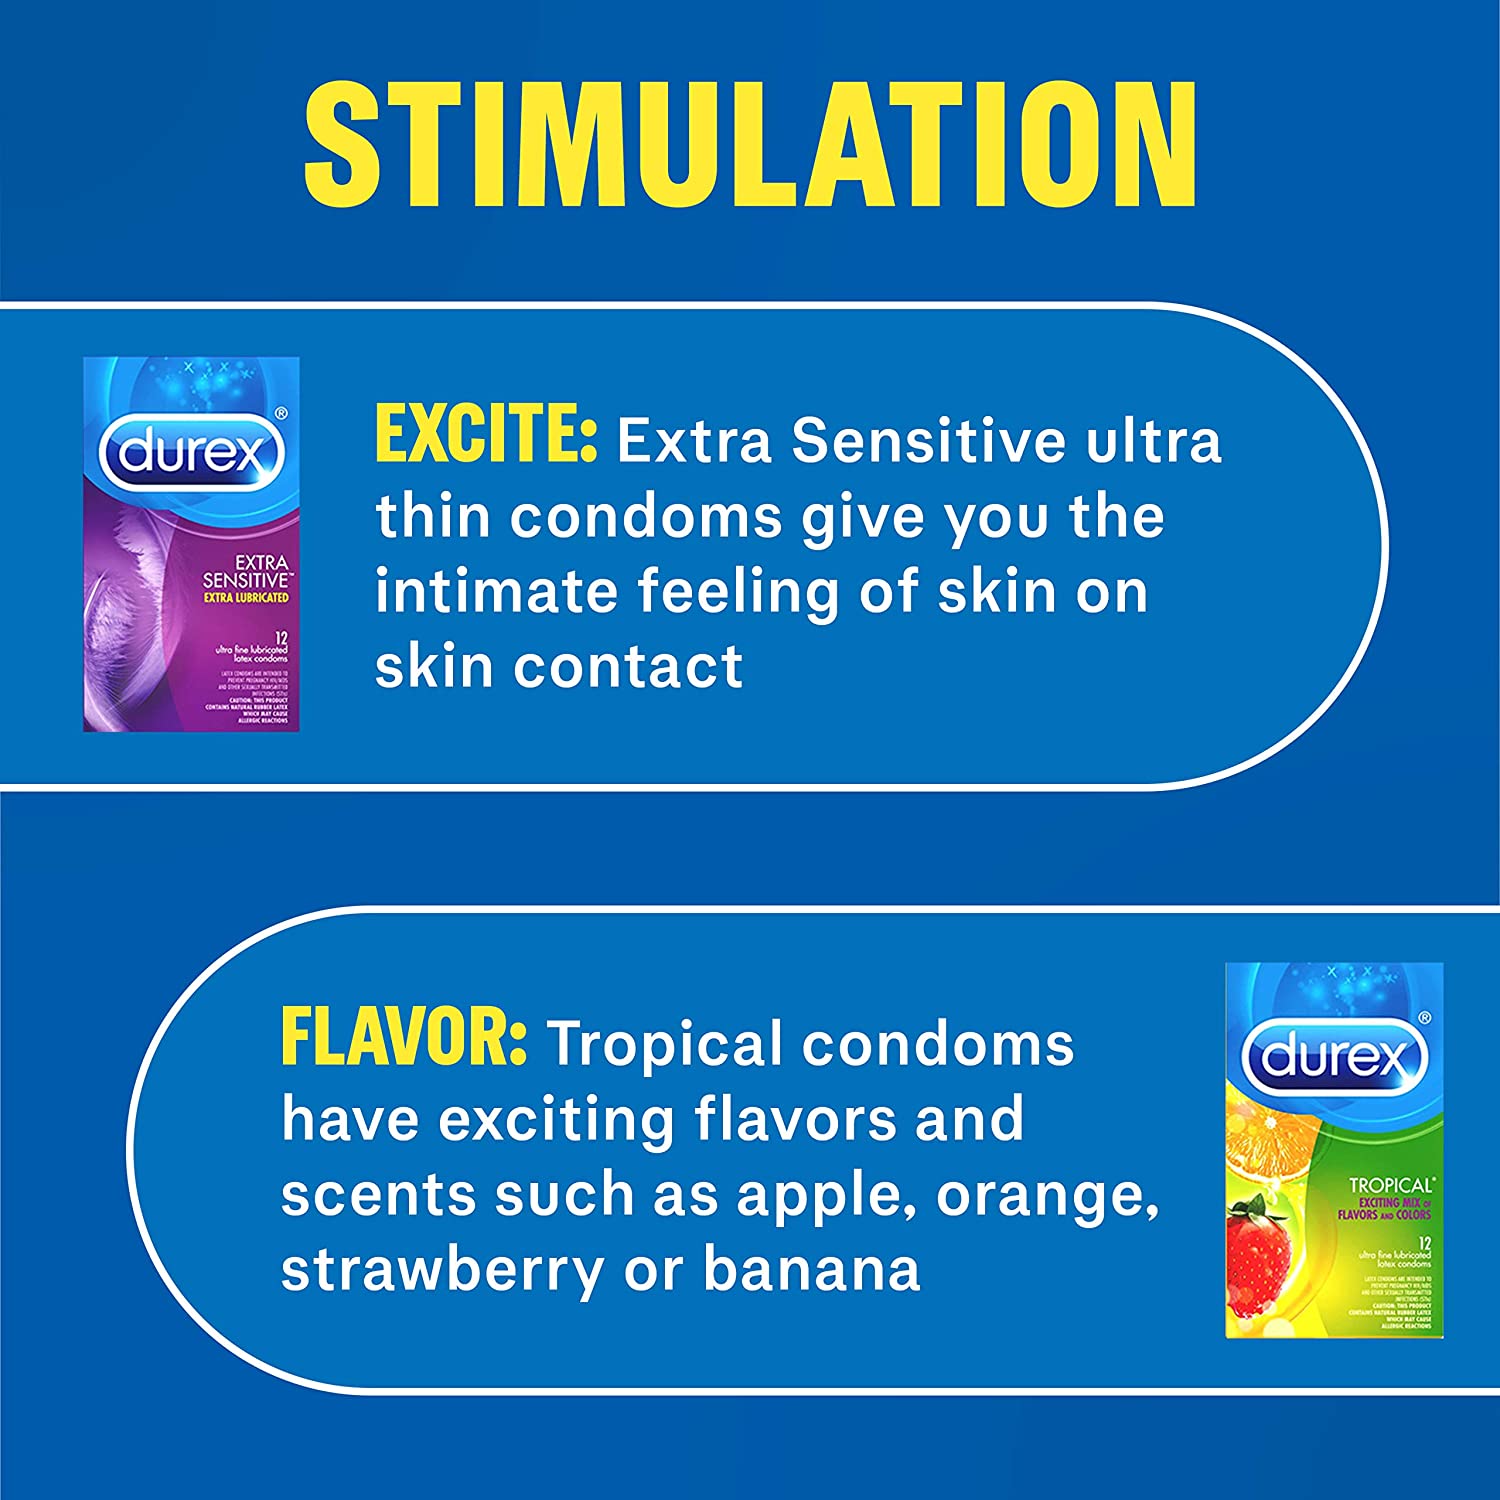 Durex Pleasure Pack Condoms